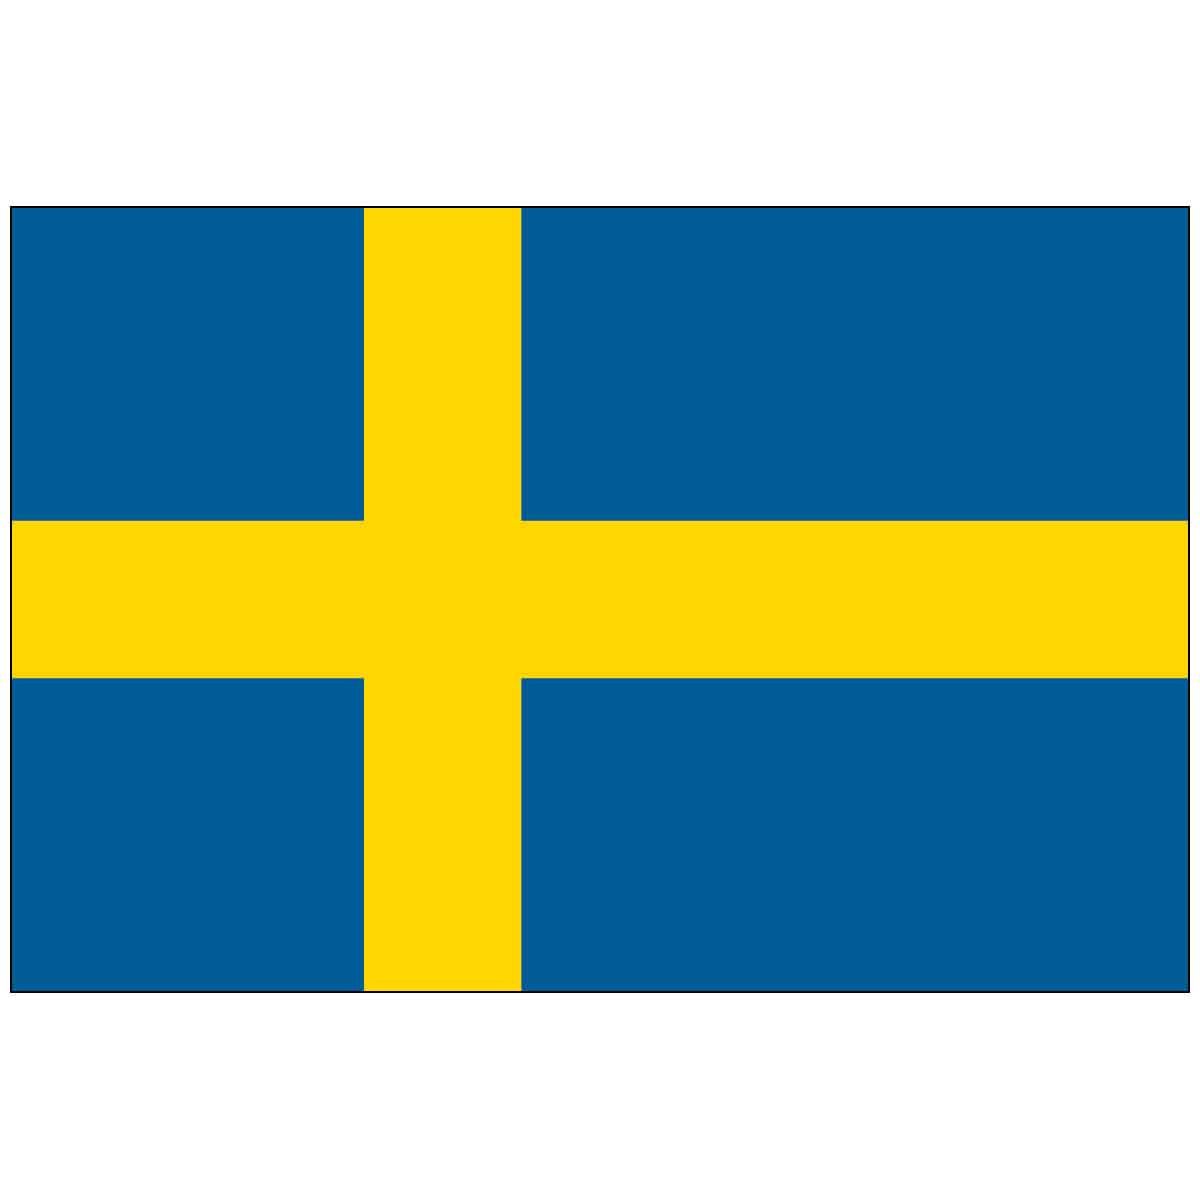 4" x 6" Mounted Endura-Gloss Sweden World Flag